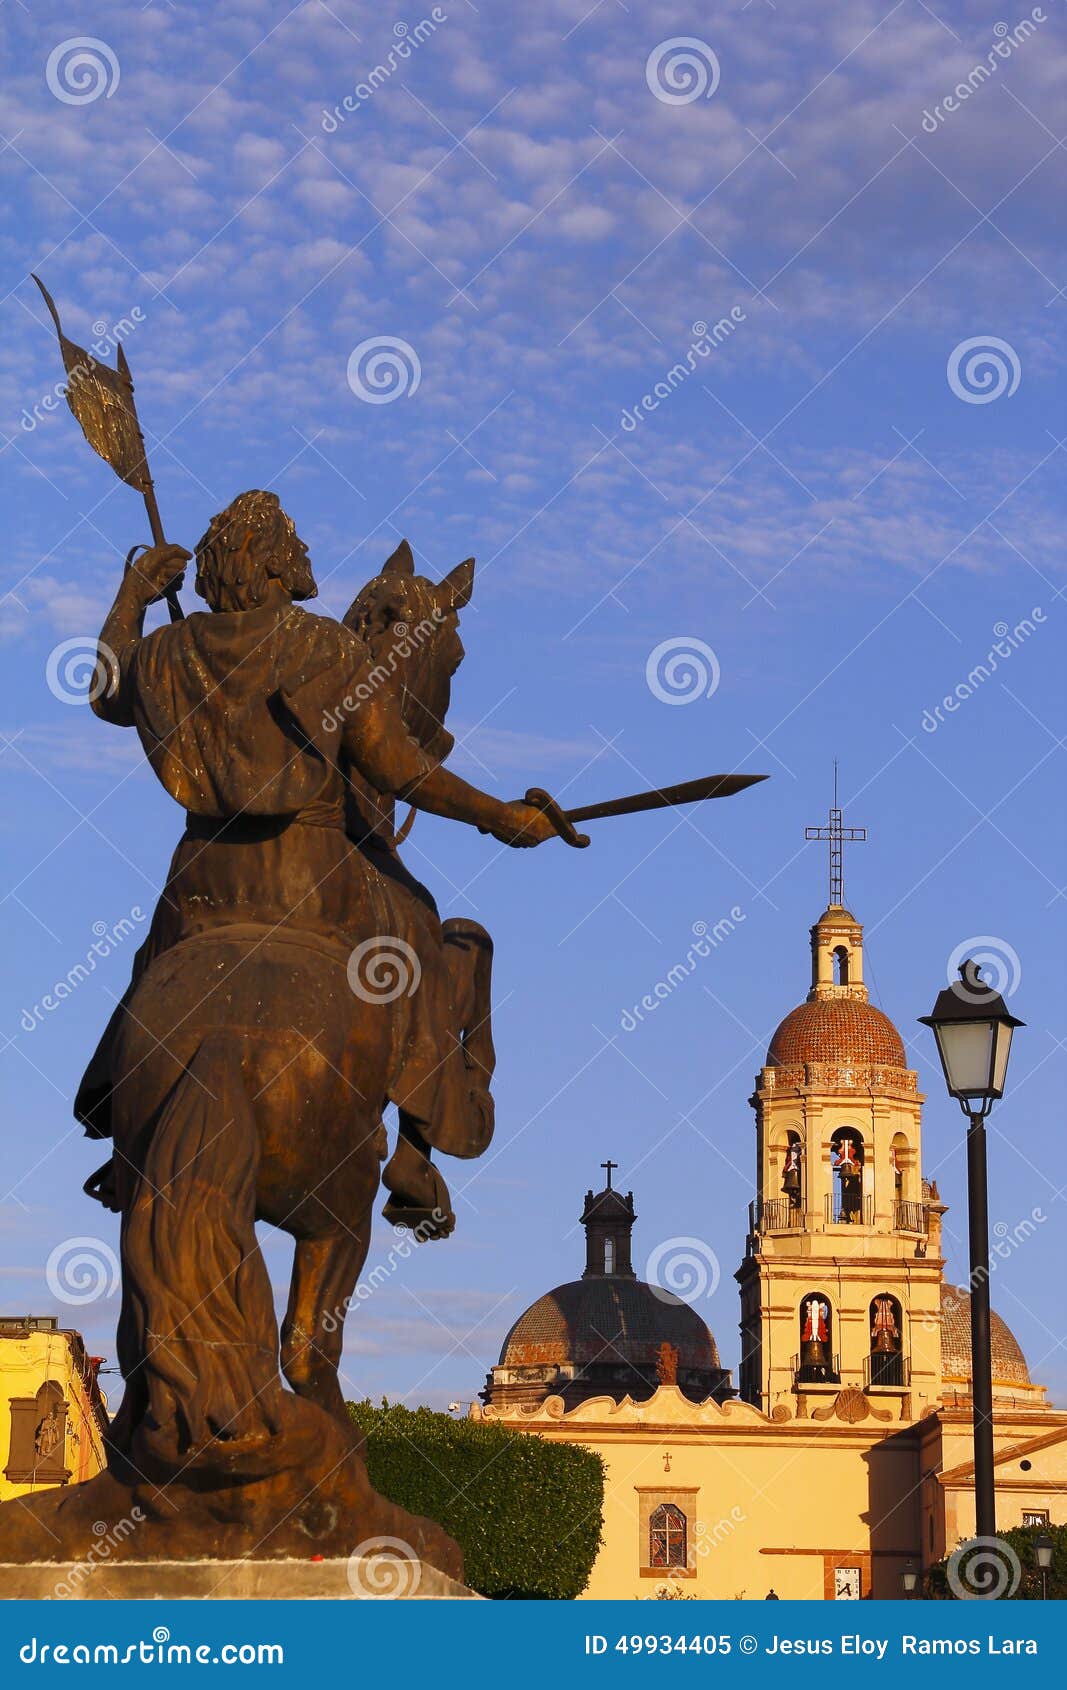 santiago apostol and the santa cruz church in queretaro, mexico i